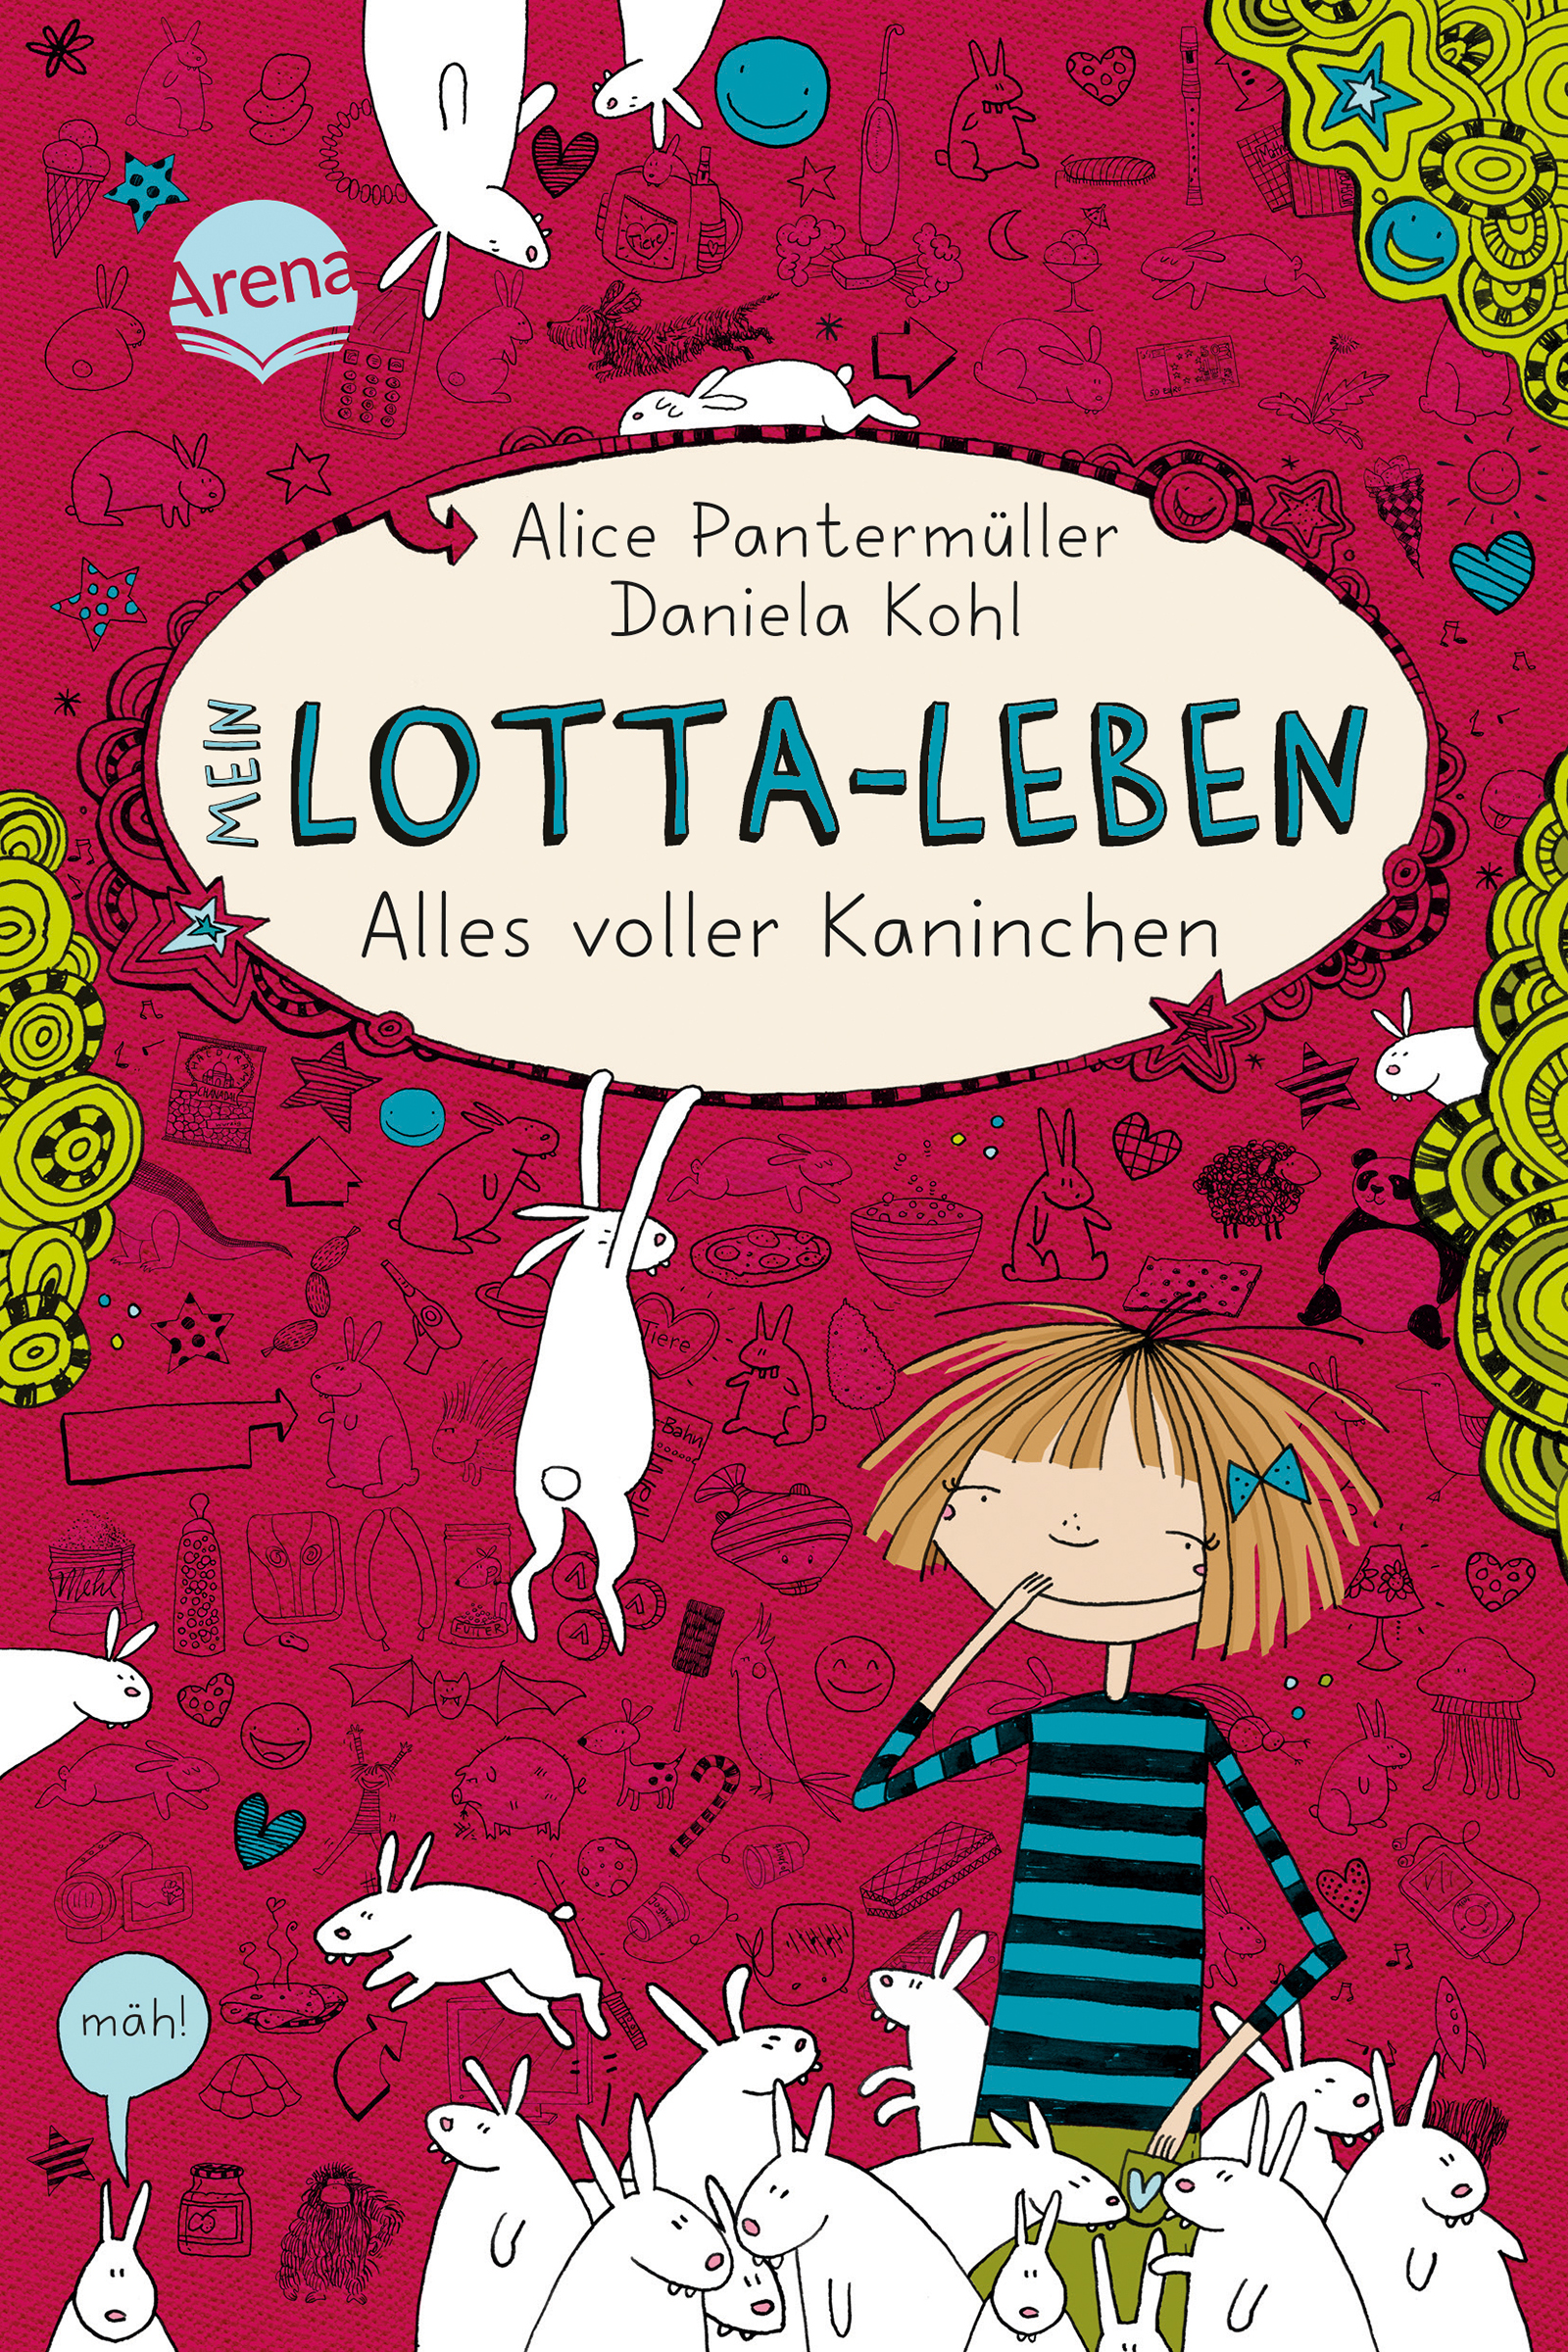 Mein Lotta Leben Alles voller Kaninchen Band 1 ist eine humorvolle Geschichte mit Lotta.